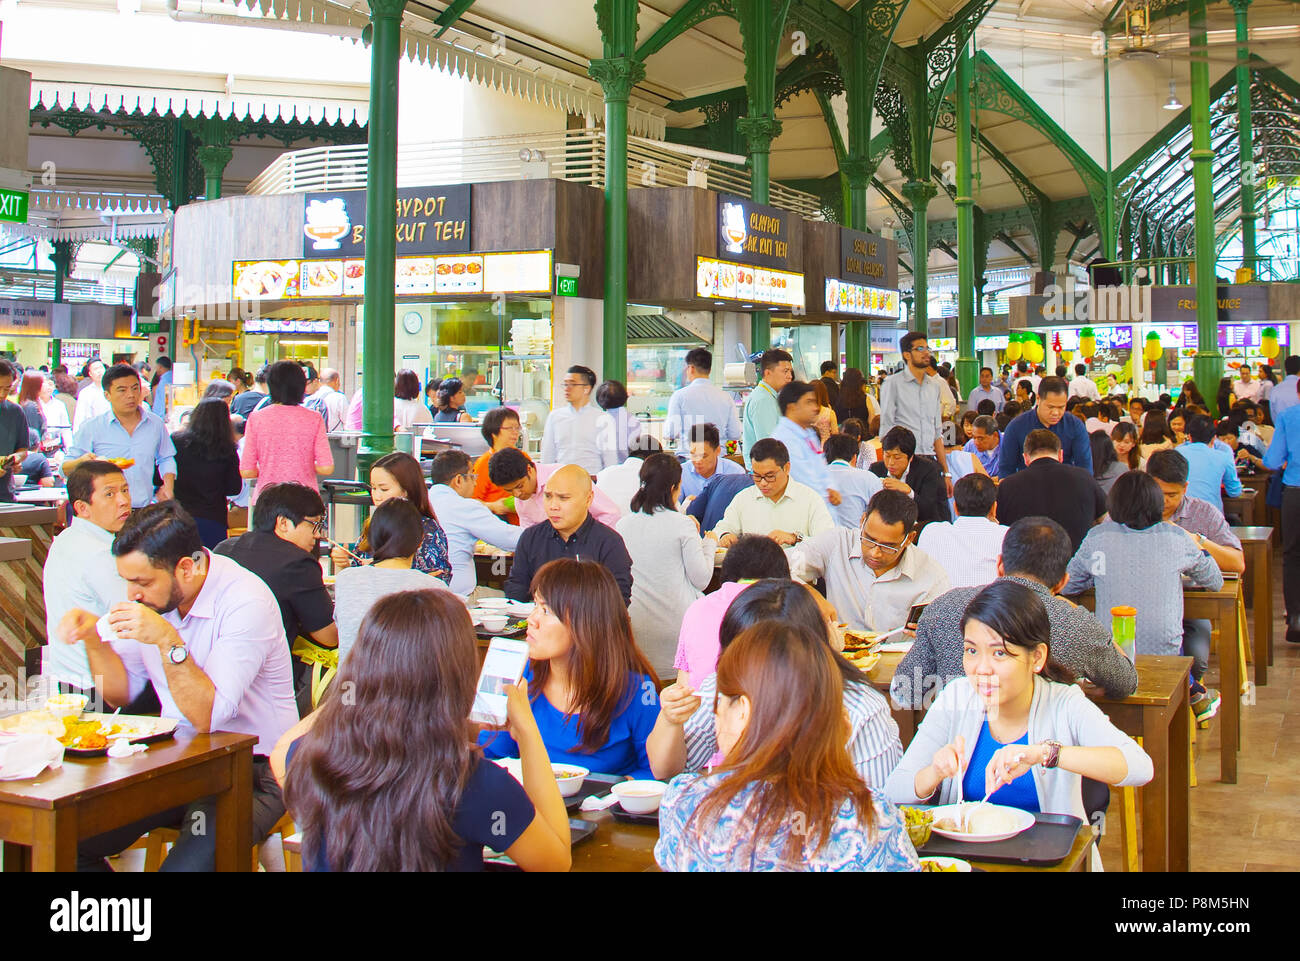 Singapour - Jan 16, 2017 : Les gens de la nourriture populaire cour à Singapour. Des stands de nourriture bon marché sont nombreux dans la ville de sorte que la plupart des Singapouriens dîner dehors un Banque D'Images